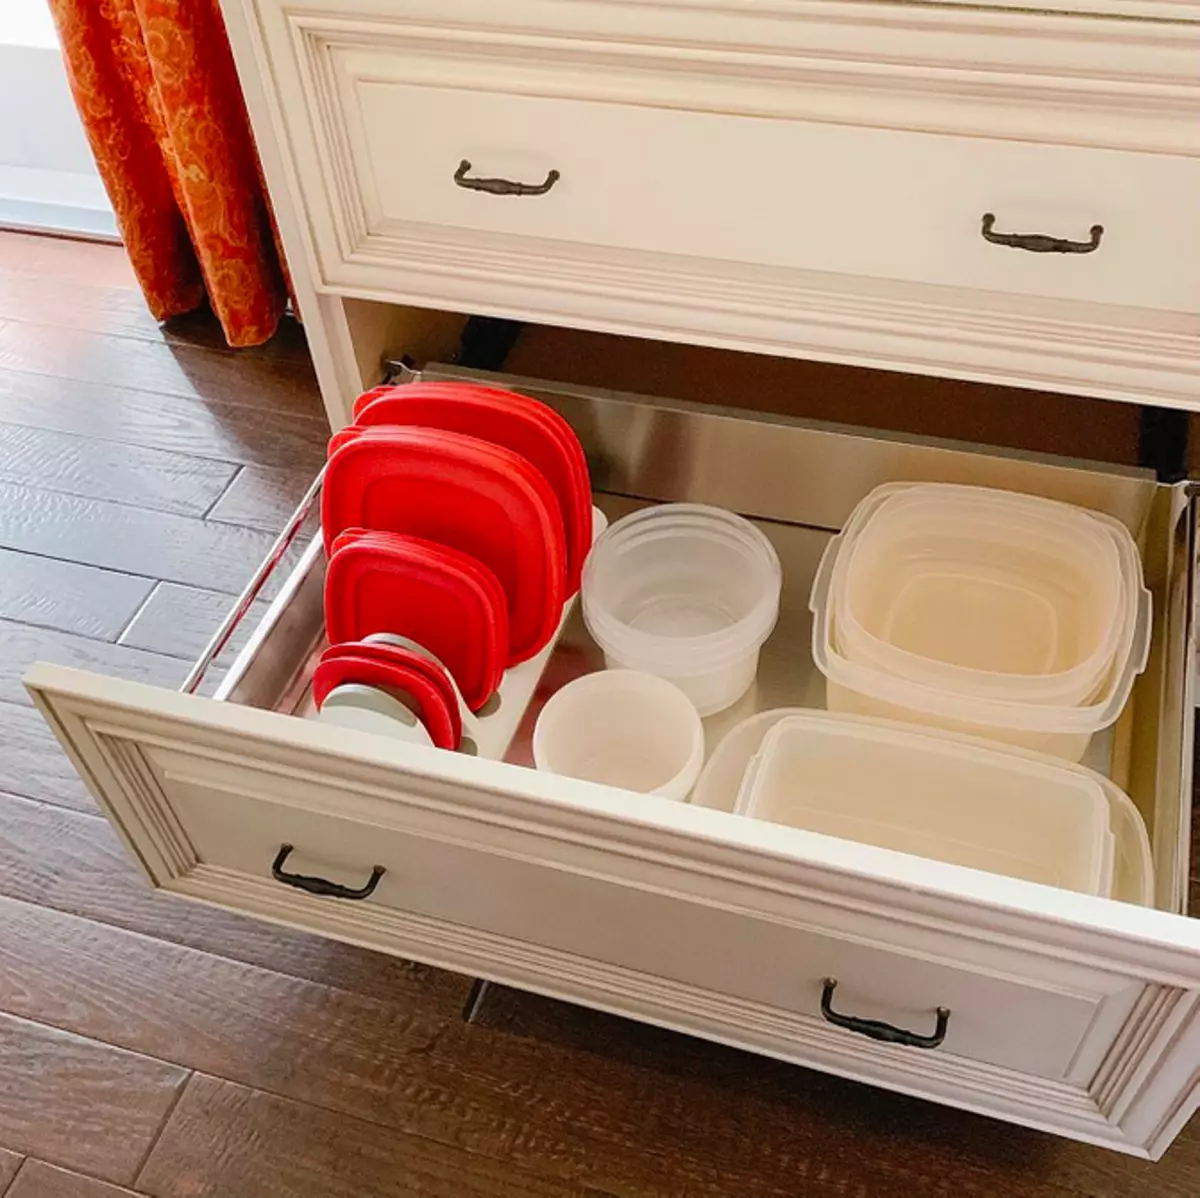 Pesanan penuh: 6 ide pintar untuk menyimpan kontainer untuk makanan di lemari dapur 3441_27